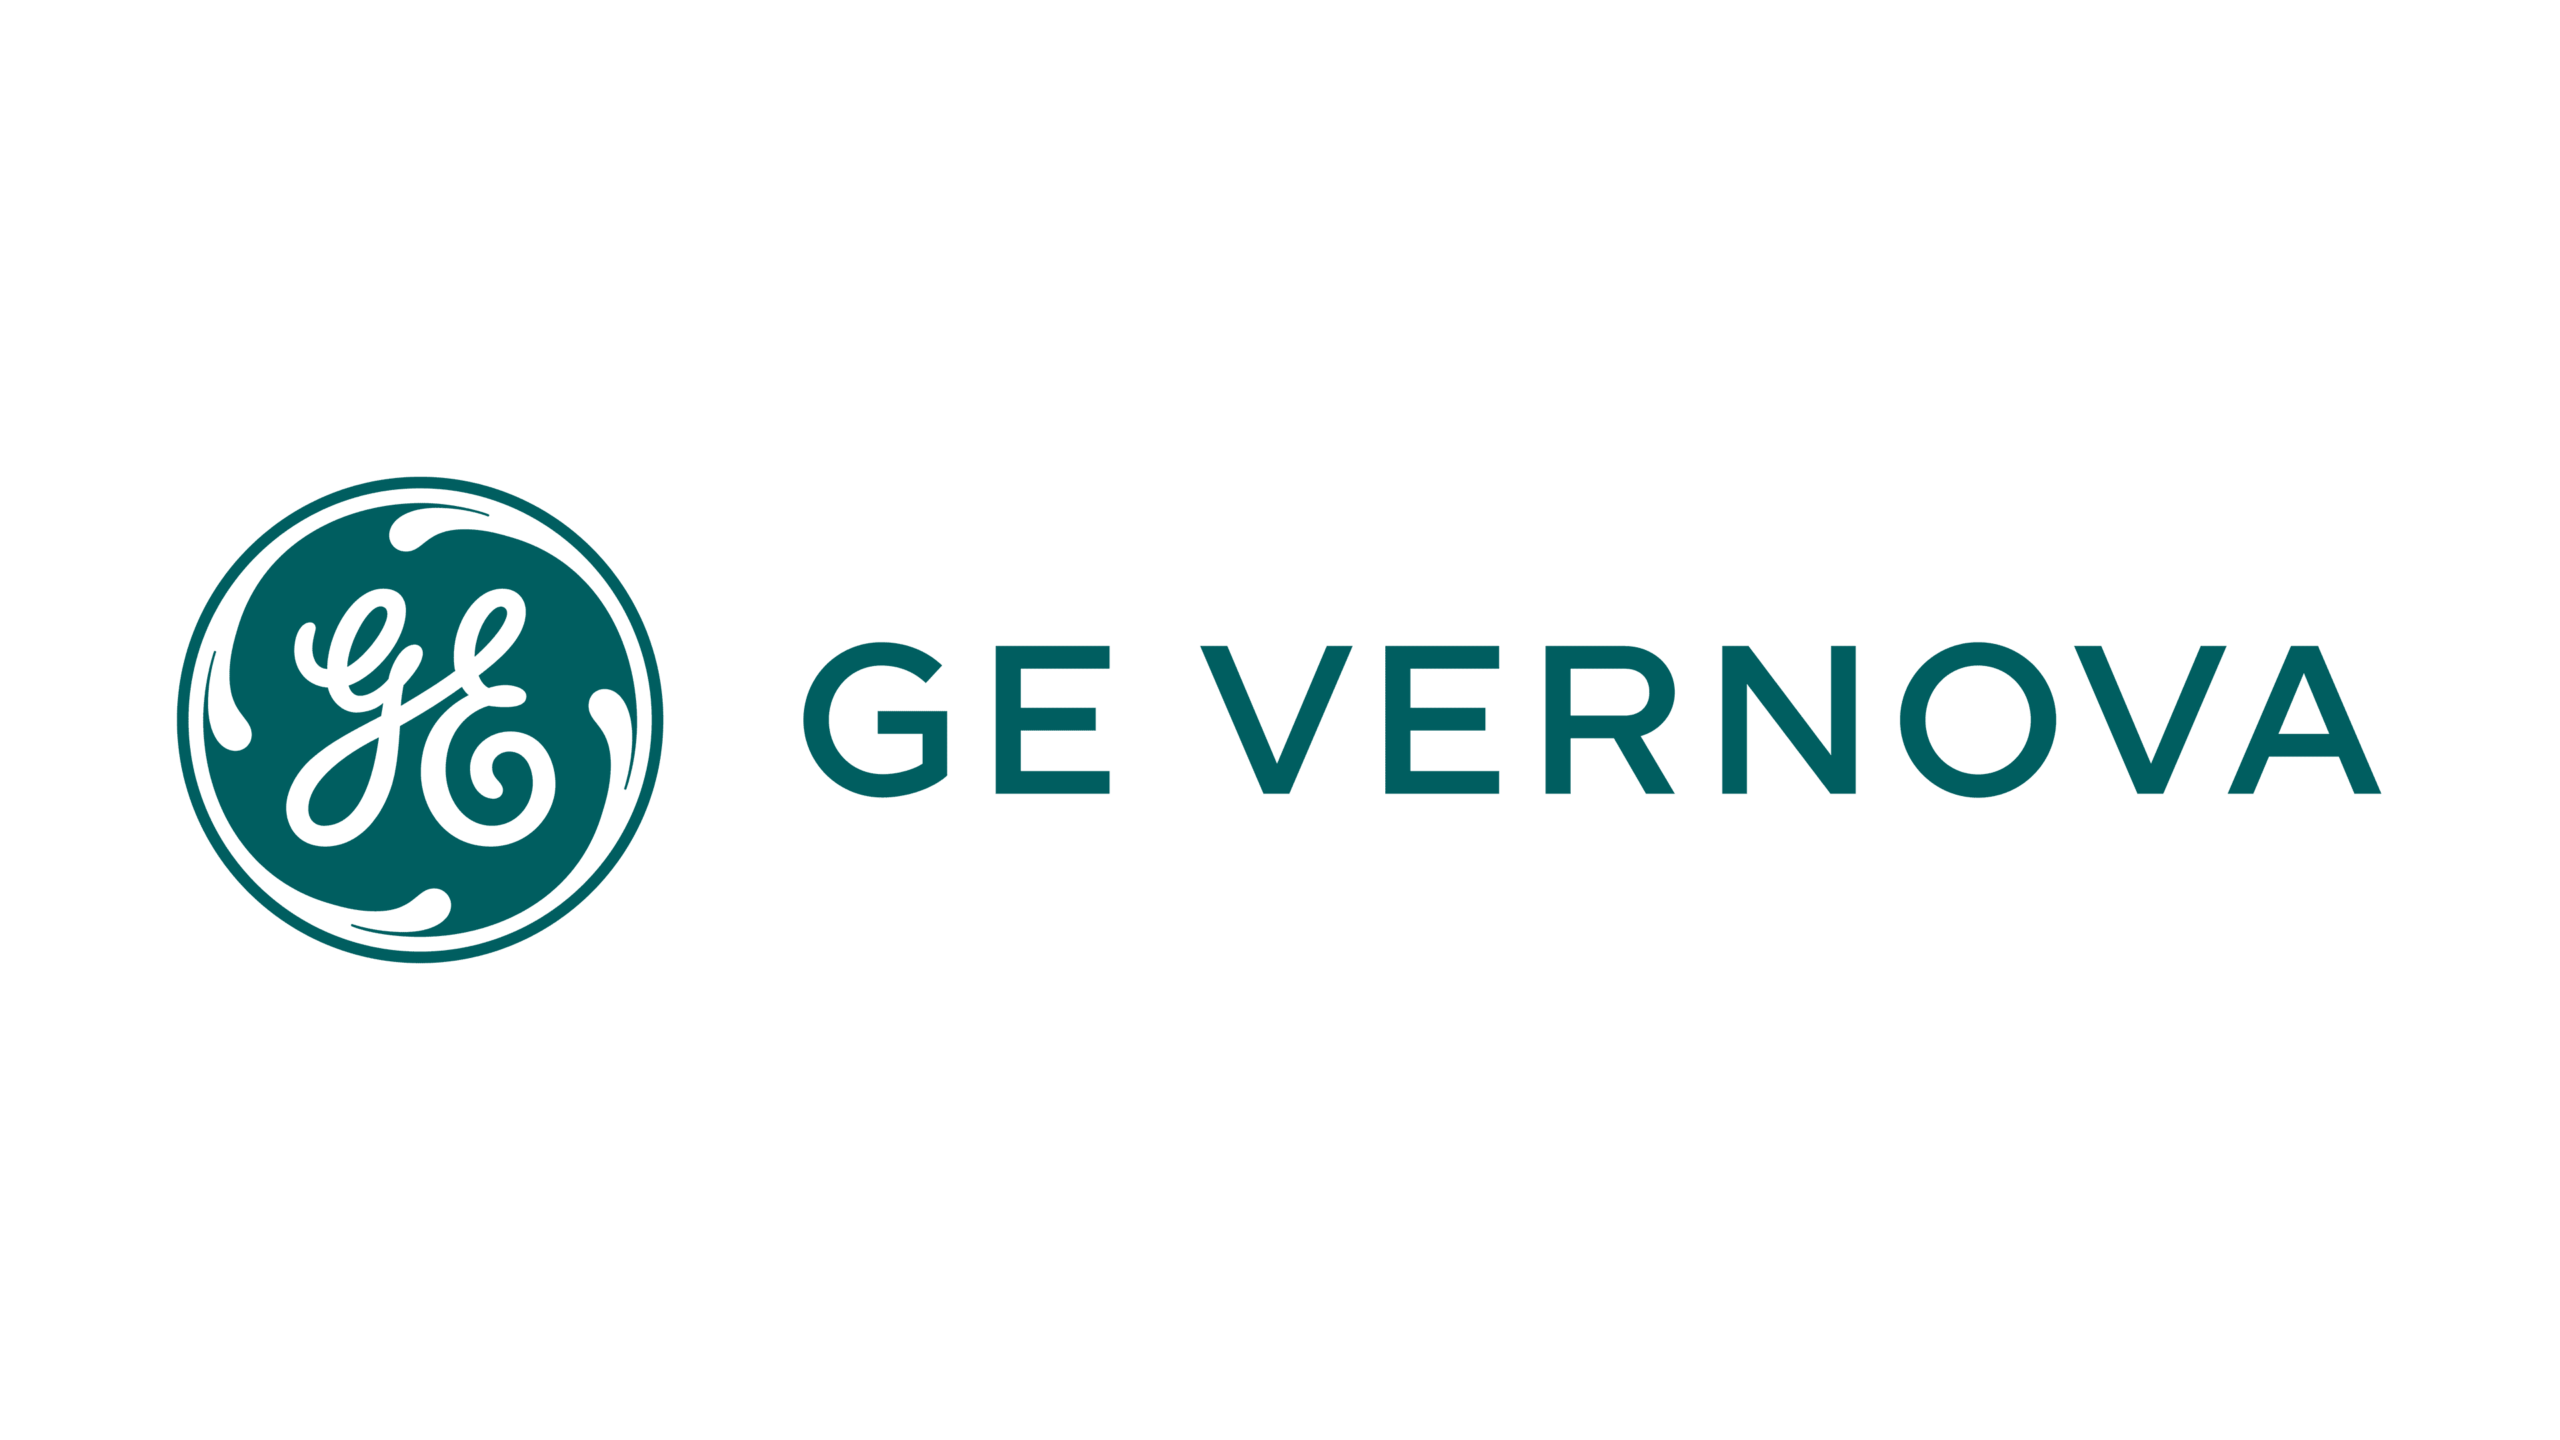 GE Vernova Company Logo